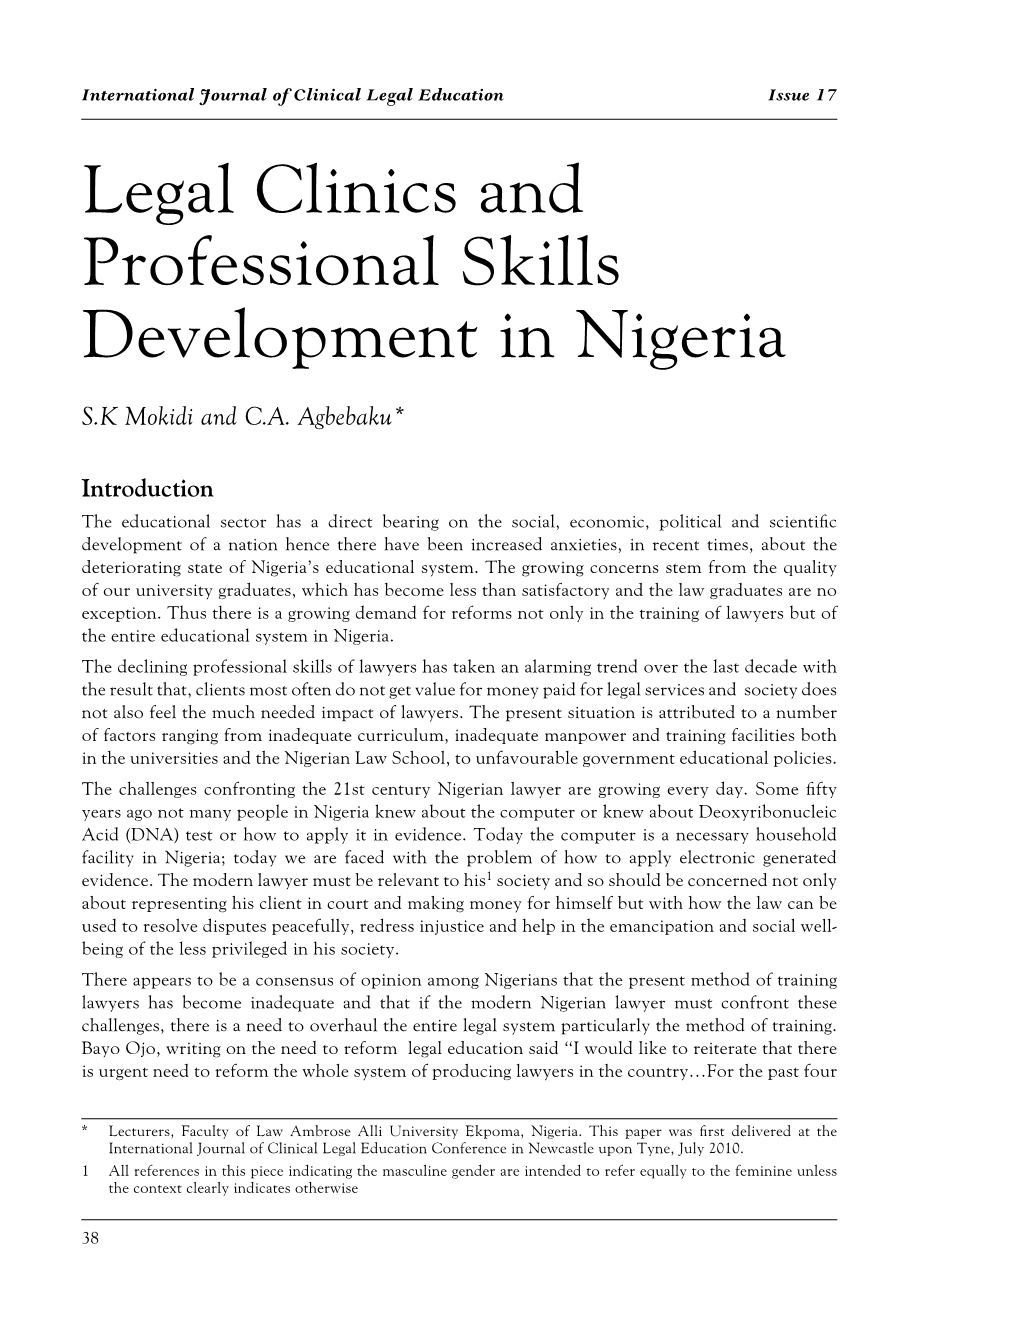 Legal Clinics and Professional Skills Development in Nigeria